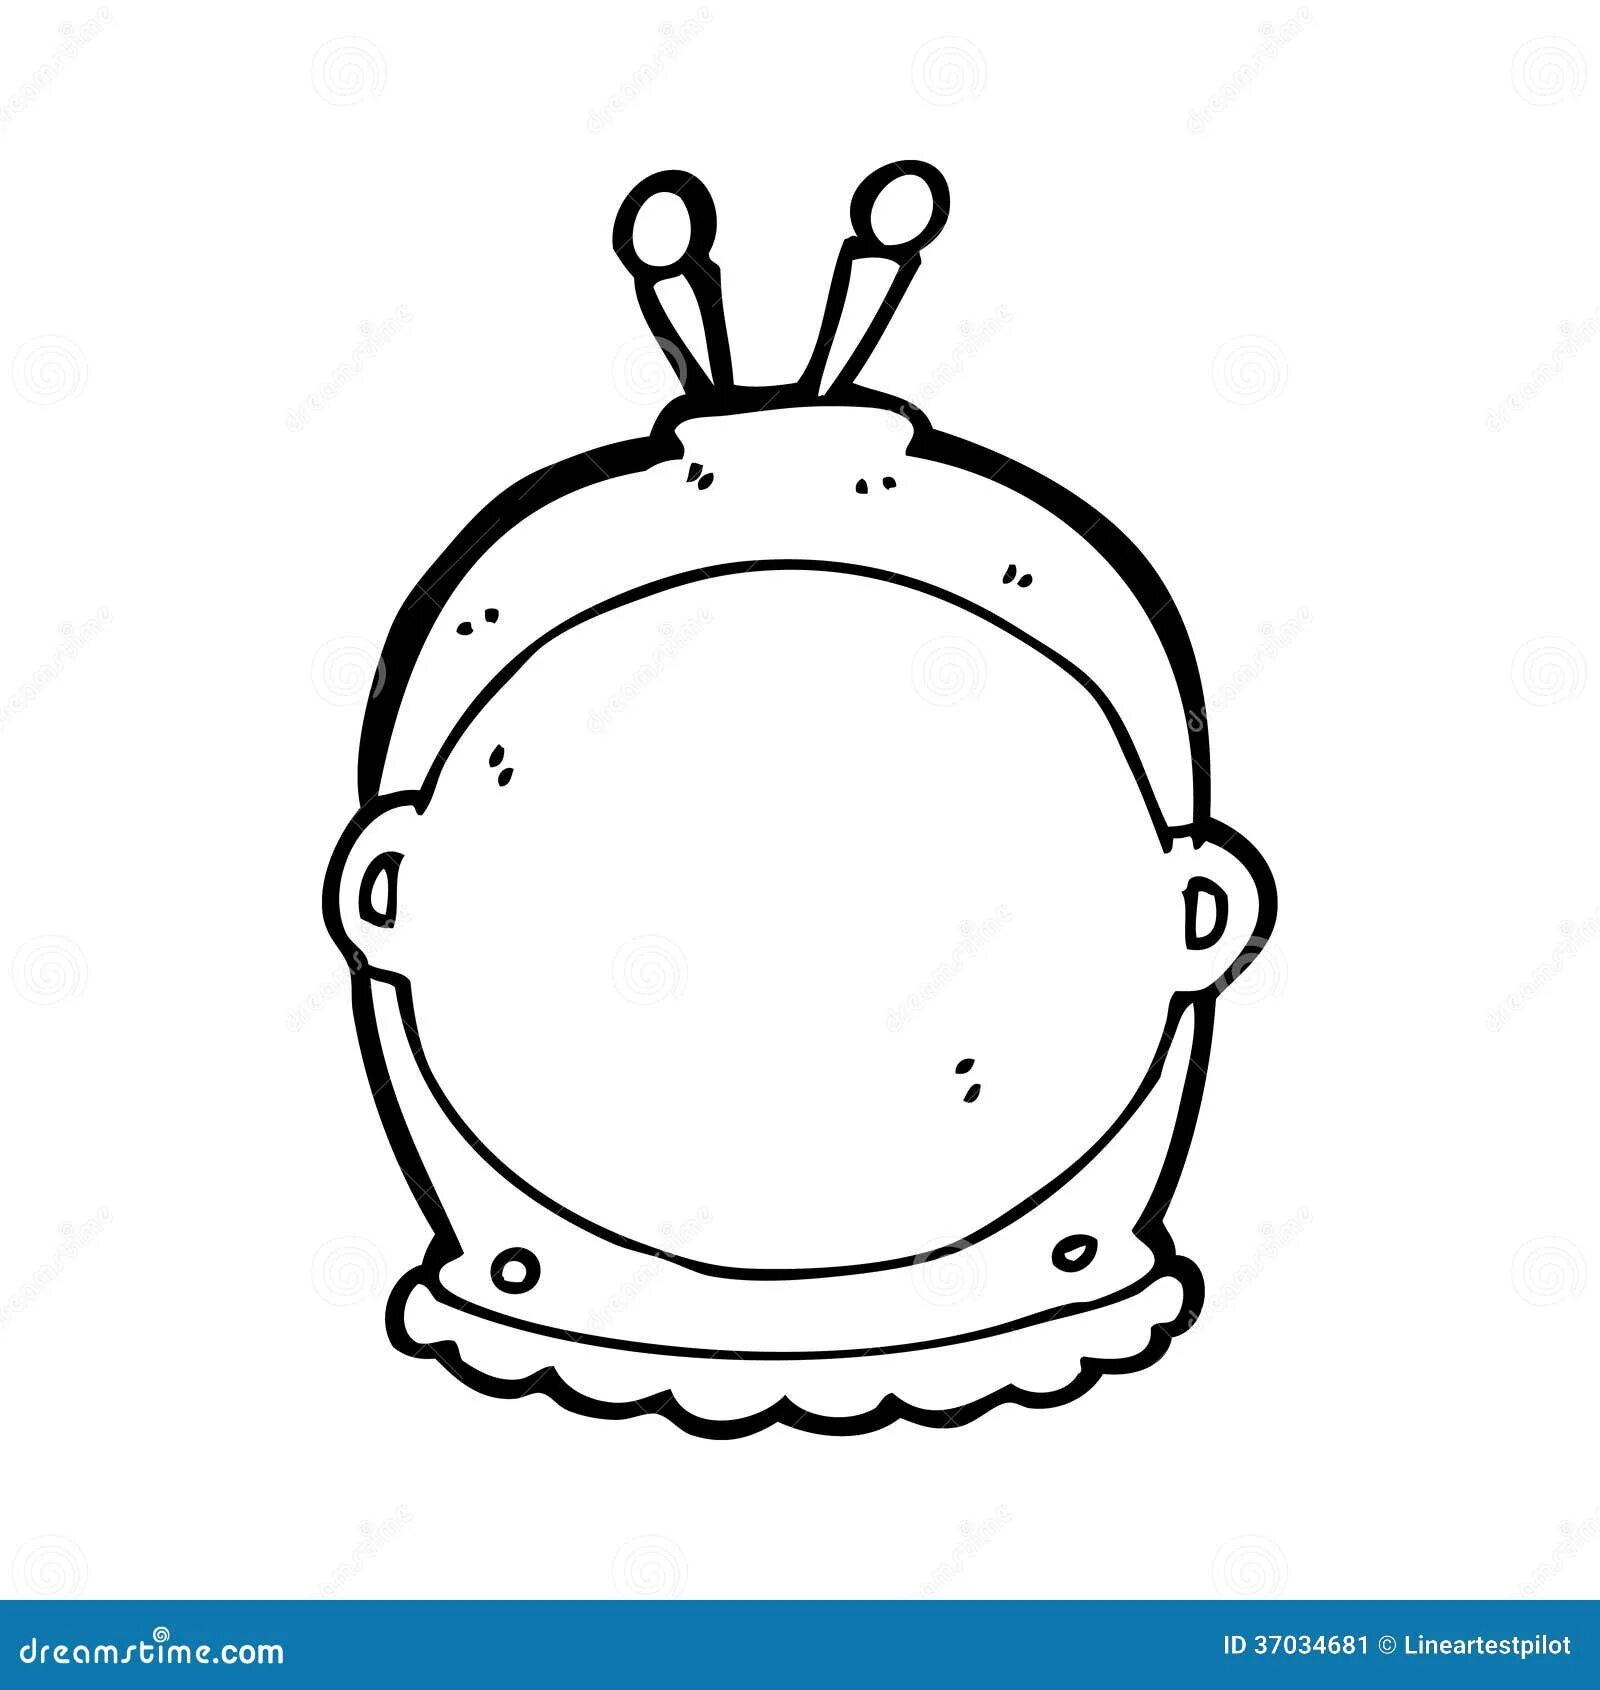 Шлем Космонавта. Шлем Космонавта трафарет. Шлем Космонавта детский. Космический шлем для ребенка - макет.